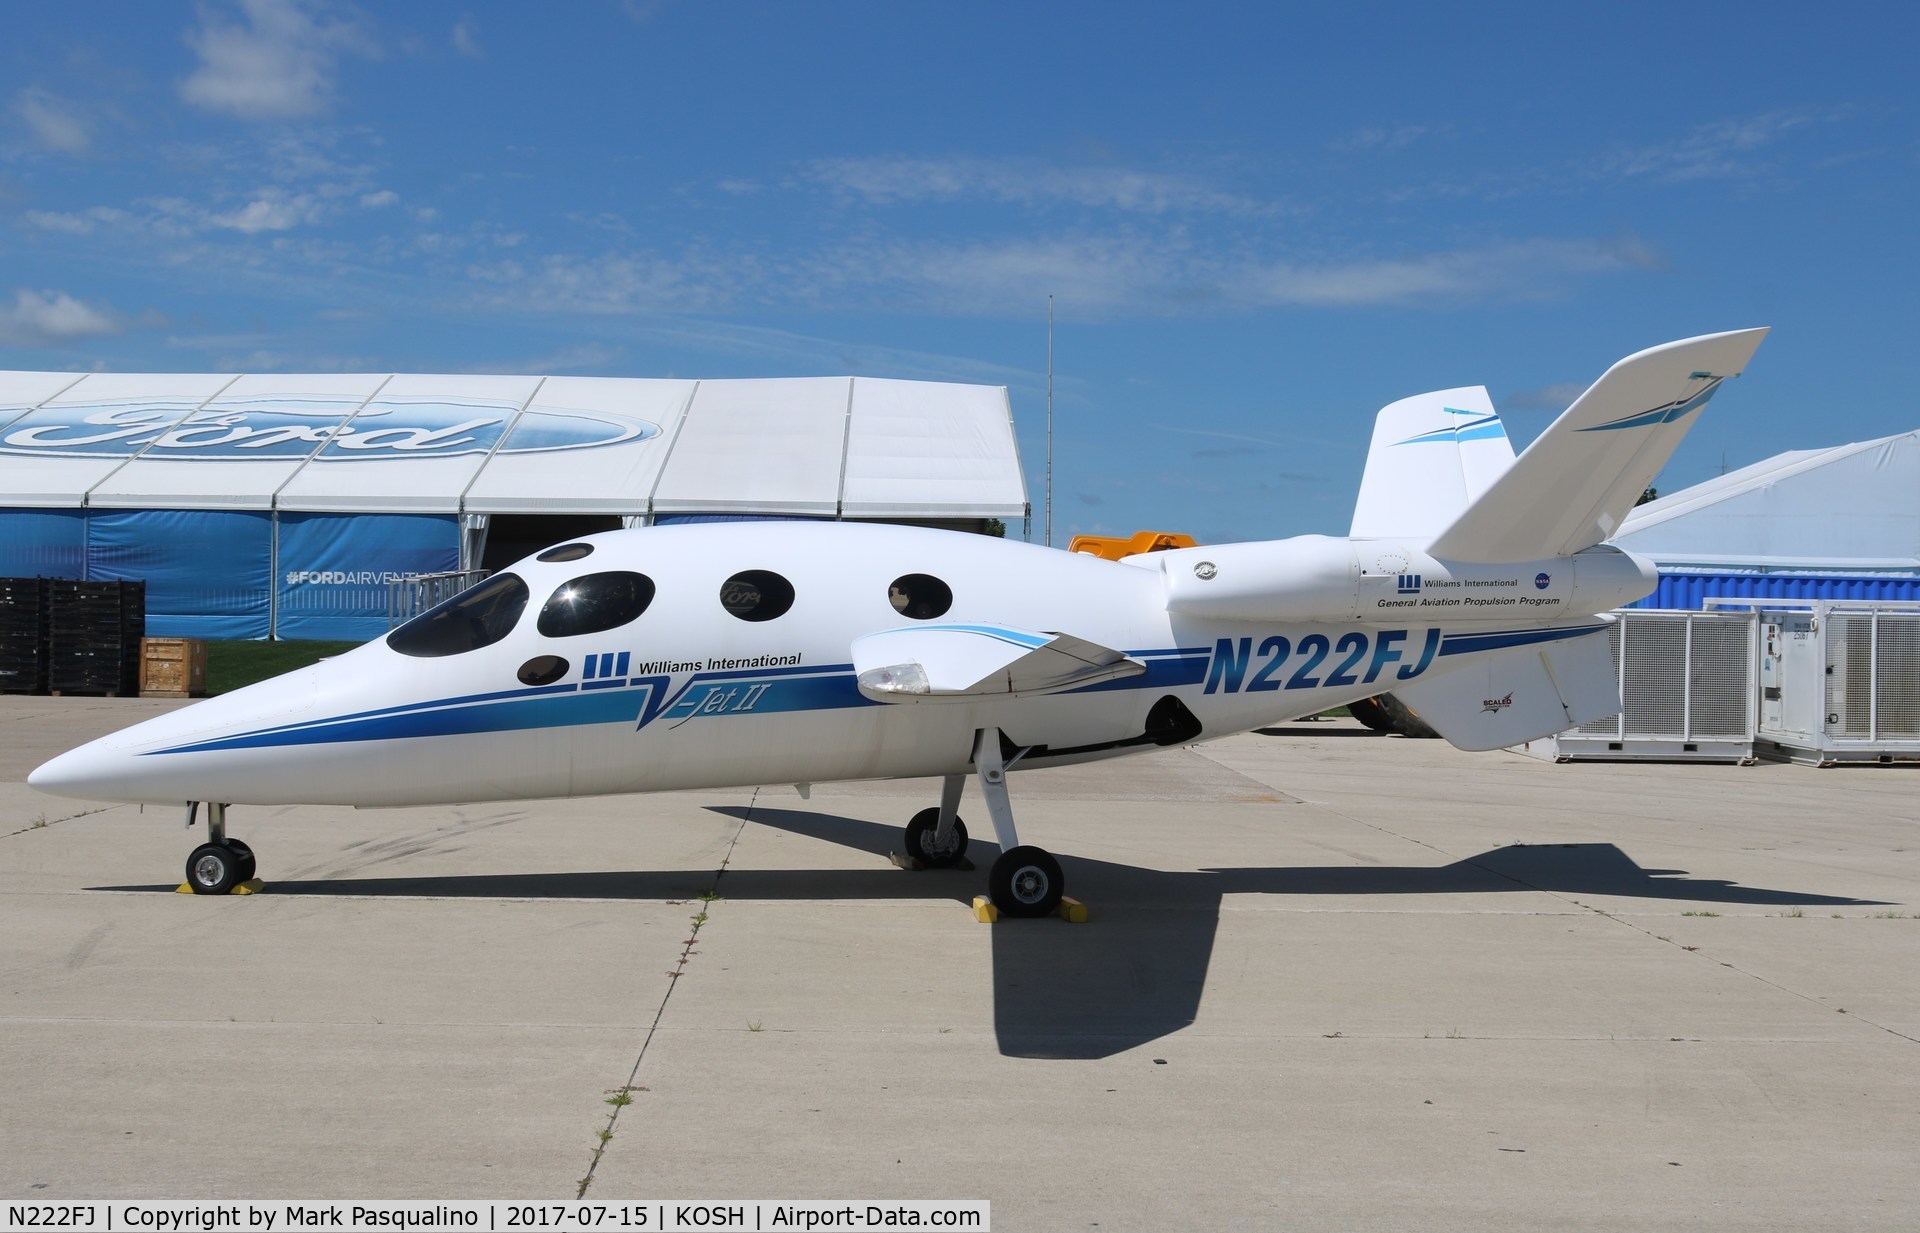 N222FJ, 1997 Scaled Composites 271 V-Jet II C/N 001, Scaled Composites 271